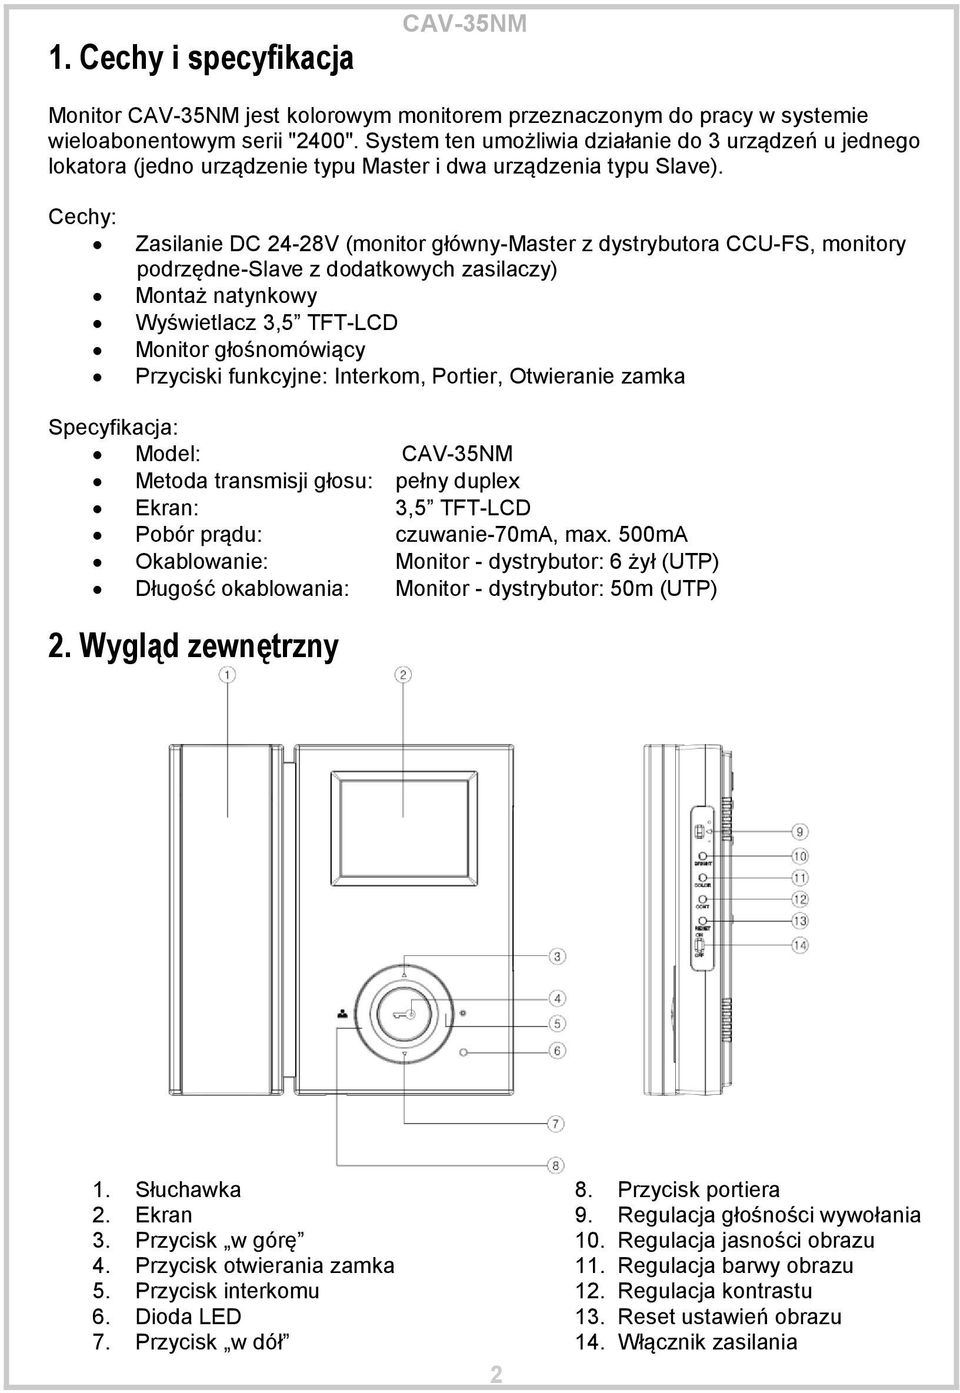 Cechy: Zasilanie DC 24-28V (monitor główny-master z dystrybutora CCU-FS, monitory podrzędne-slave z dodatkowych zasilaczy) Montaż natynkowy Wyświetlacz 3,5 TFT-LCD Monitor głośnomówiący Przyciski